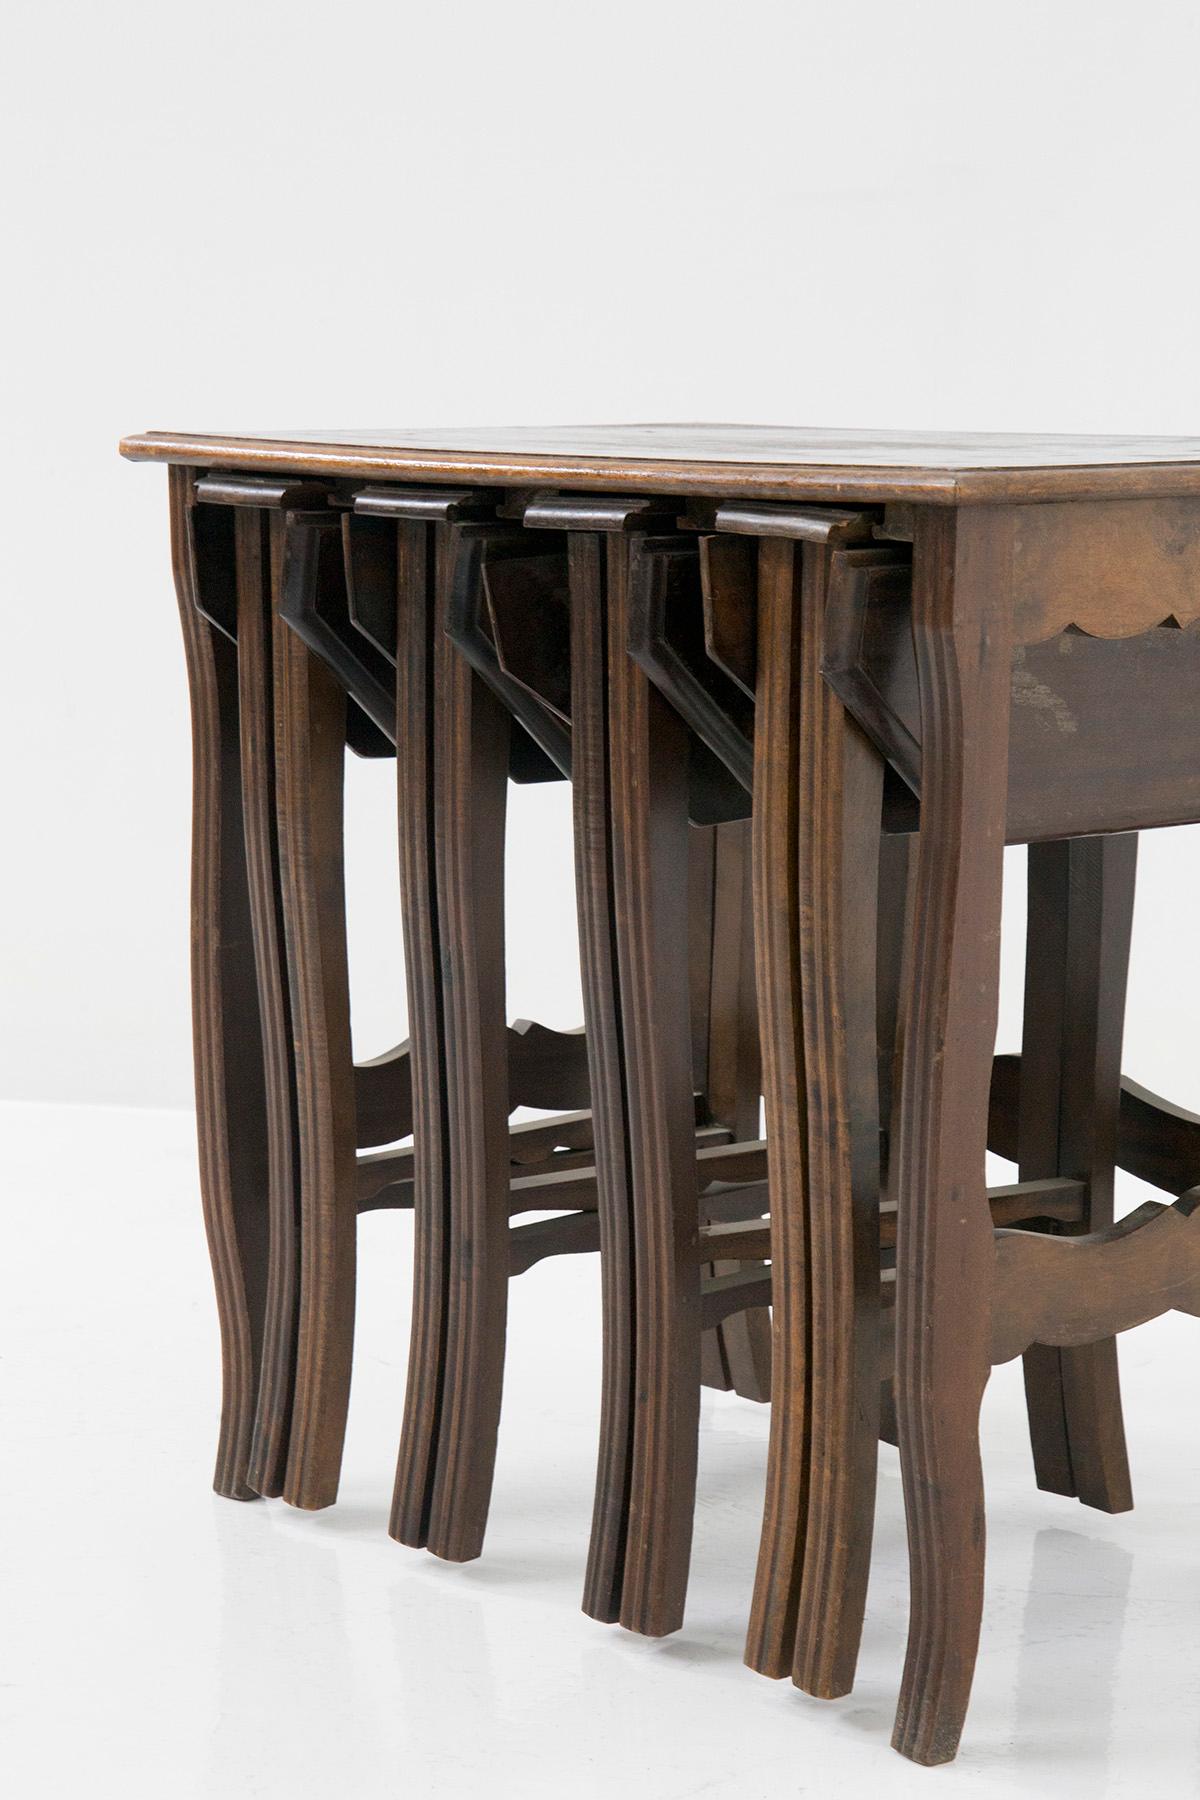 Plongez dans le charme irrésistible de notre belle table basse vintage en bois des années 60. Cette pièce unique capte l'attention grâce à son secret captivant : un mécanisme caché qui révèle quatre tabourets en bois fermés, qui s'ouvrent élégamment